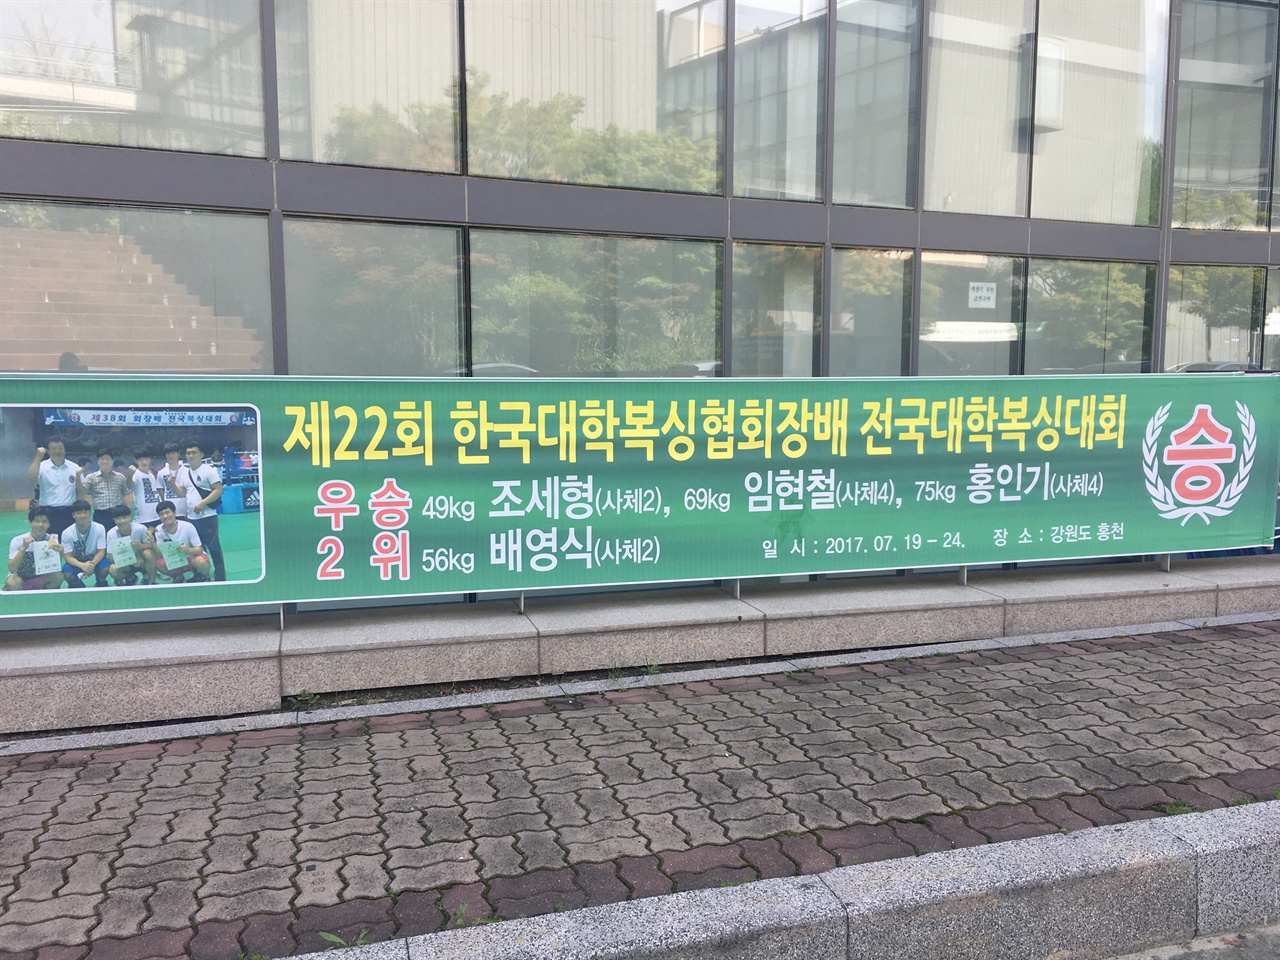  대전대학교 건물에 게시된 복싱부 선수들의 플랜카드.